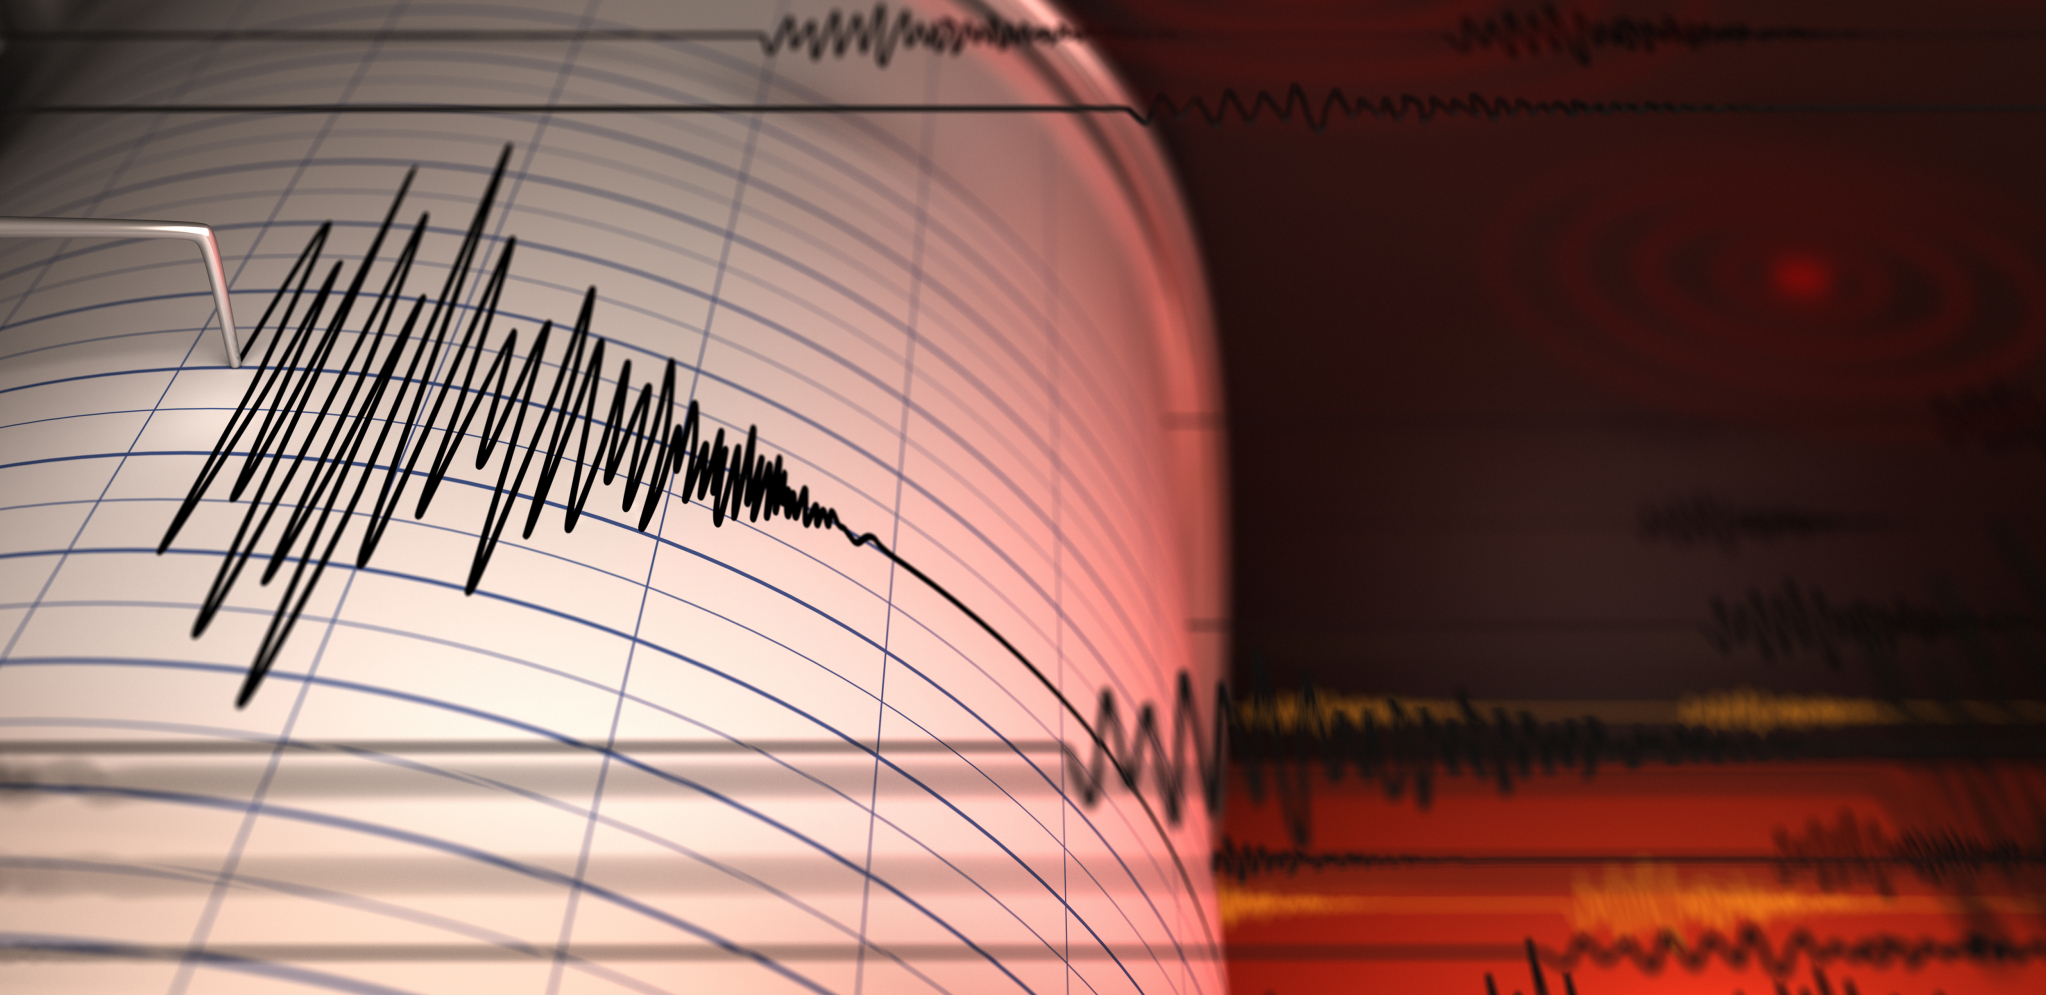 JAČINA 5,5 RIHTERA Zemljotres pogodio Rusiju